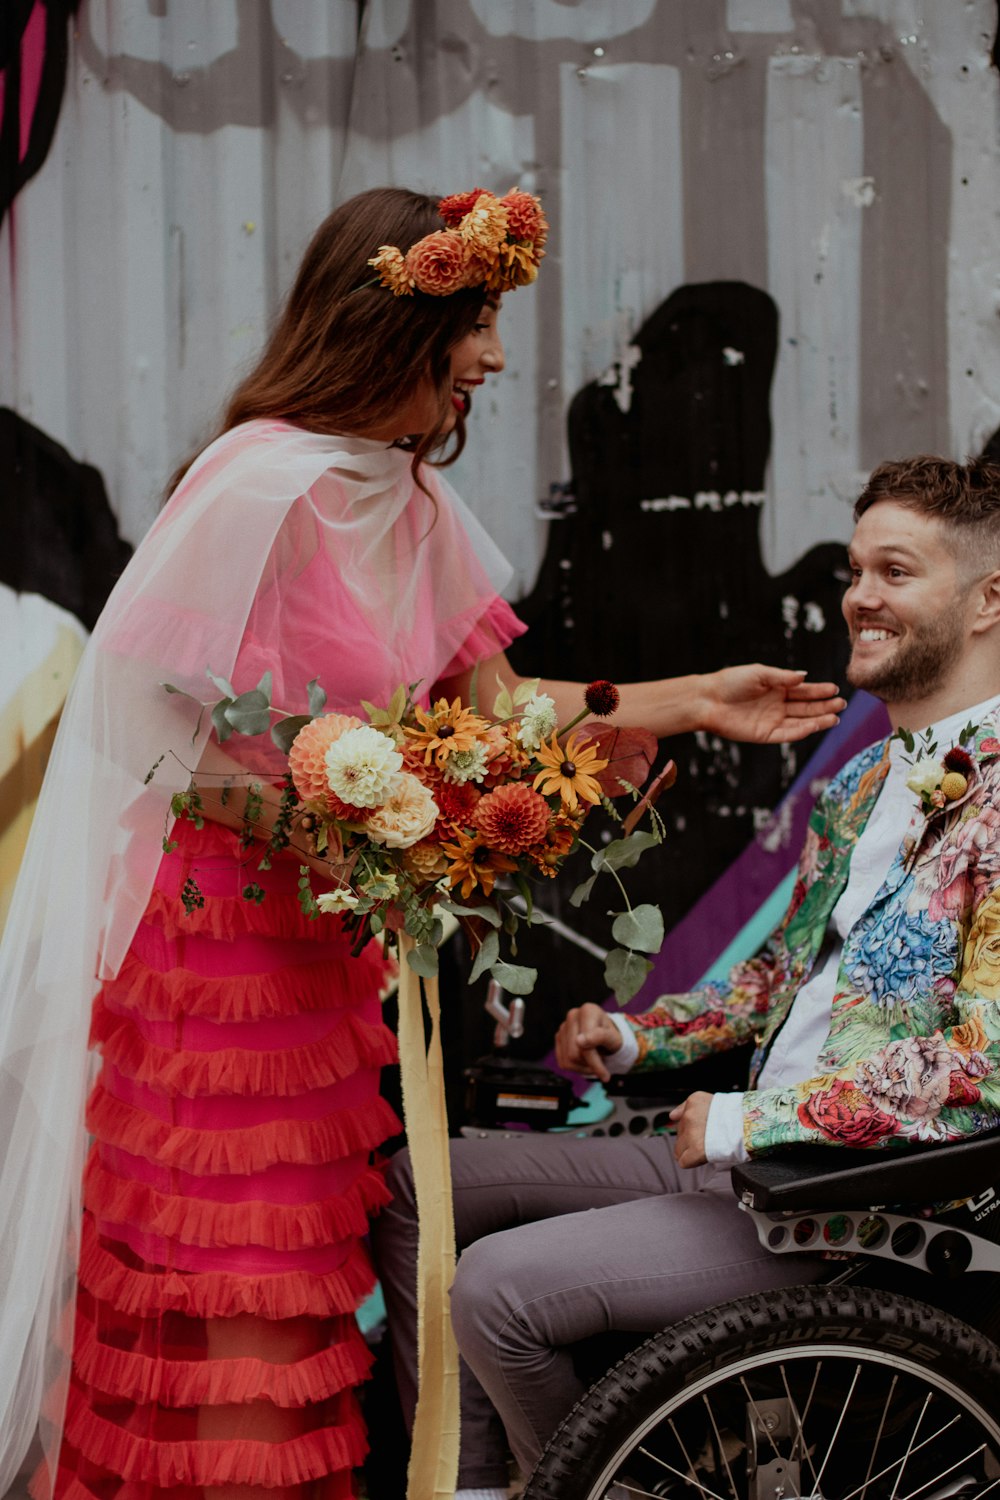 Ein Mann im Rollstuhl hält einen Blumenstrauß neben einer Frau in einem